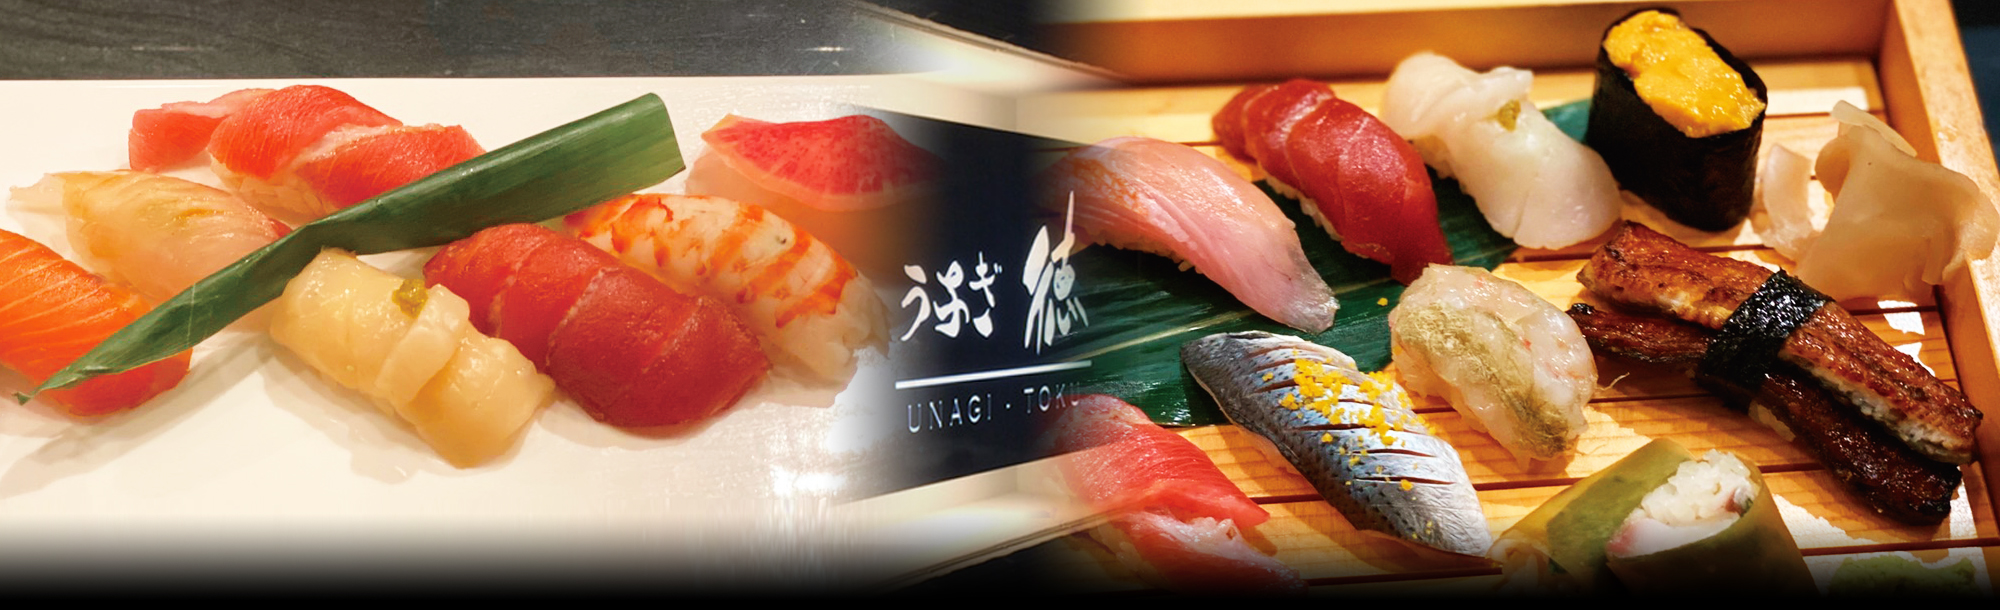 Sushi Nigiri & Roll